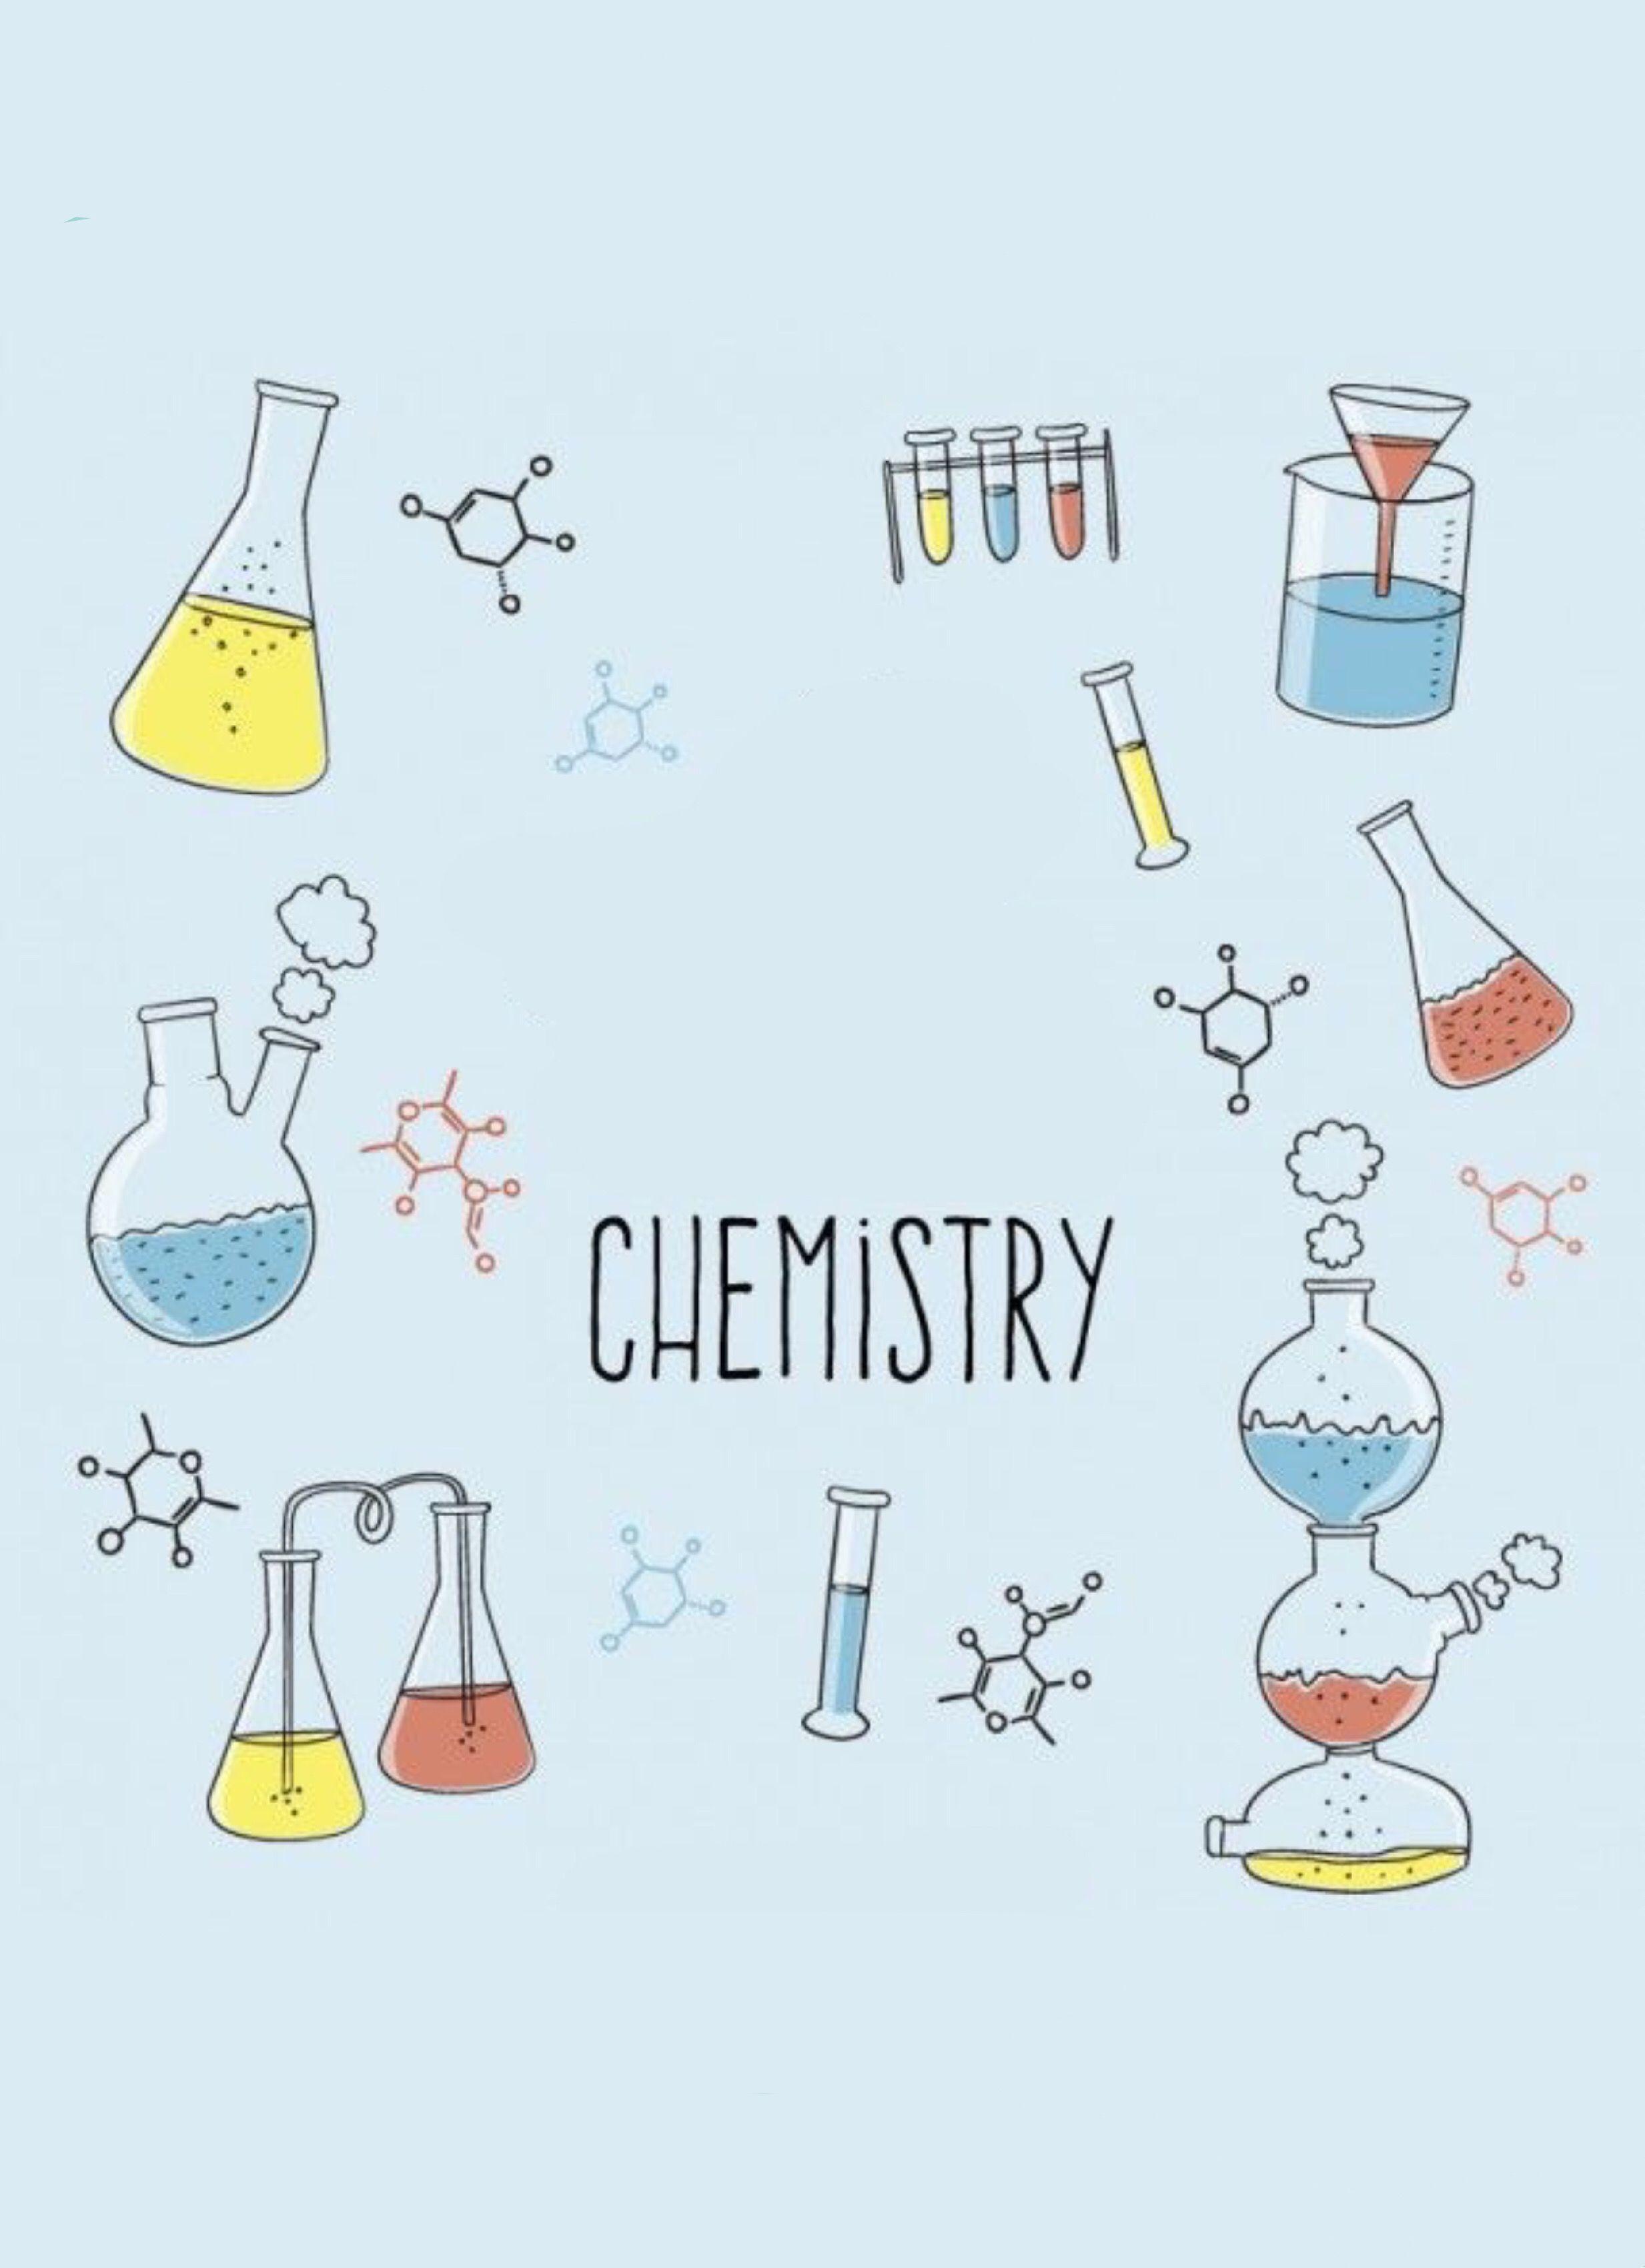 Chia sẻ 59+ về chemistry hình nền hóa học đẹp - Du học Akina